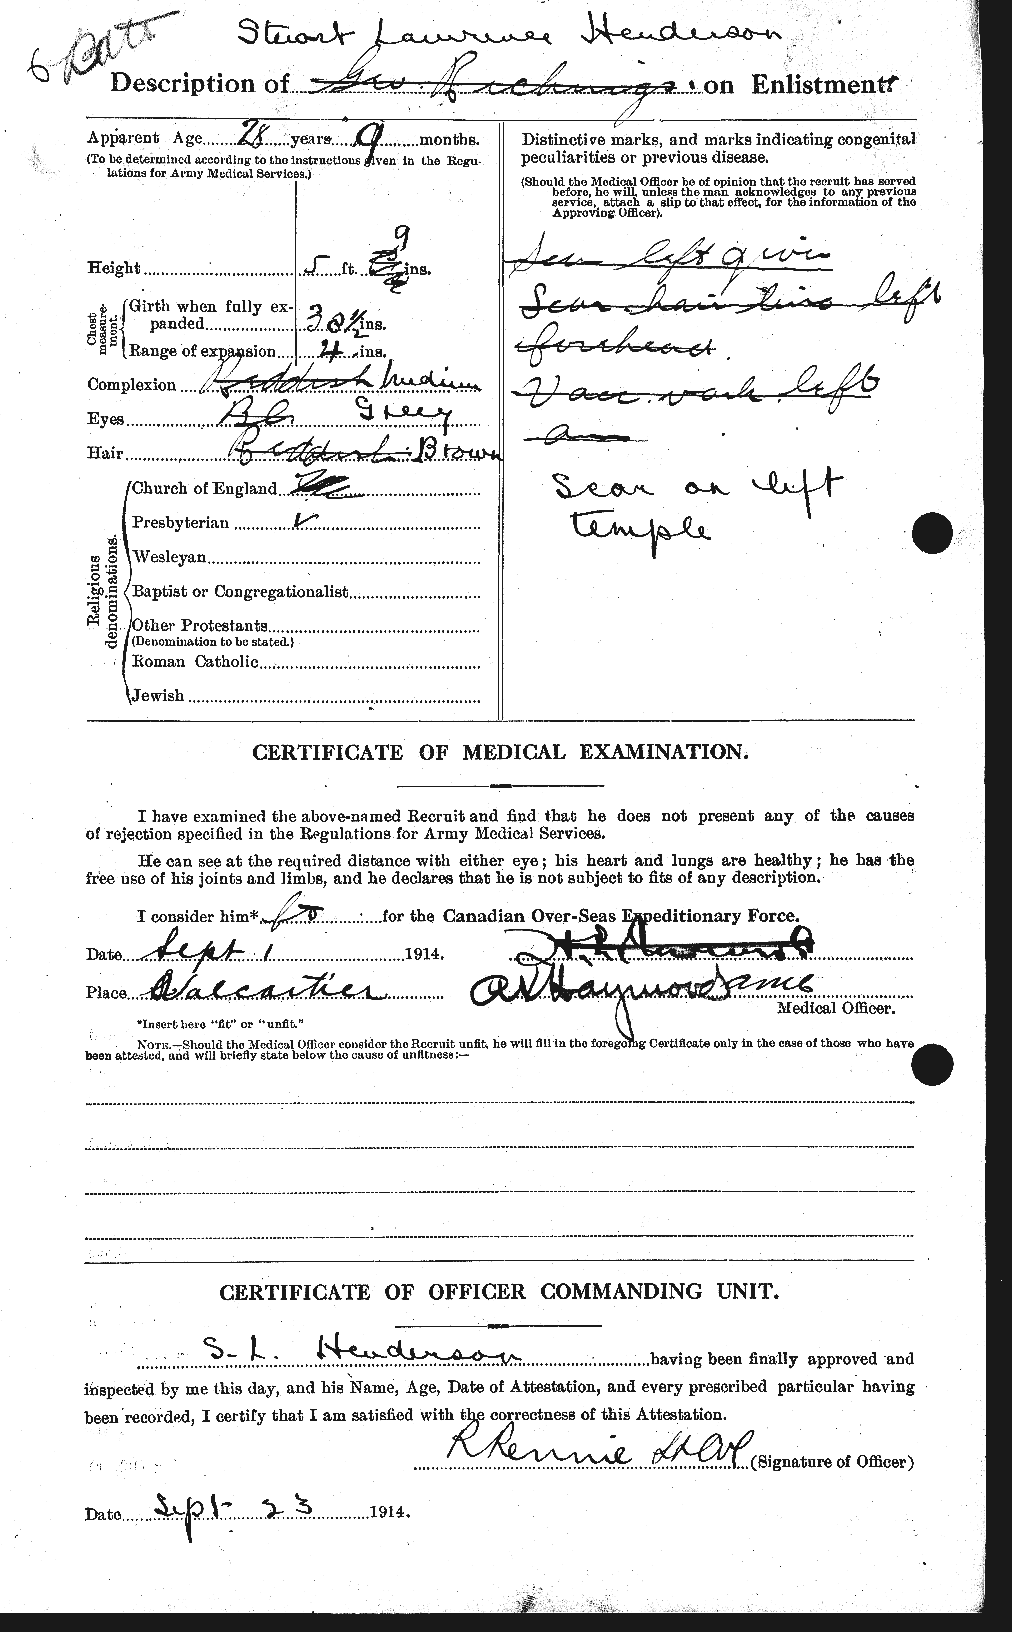 Dossiers du Personnel de la Première Guerre mondiale - CEC 387391b